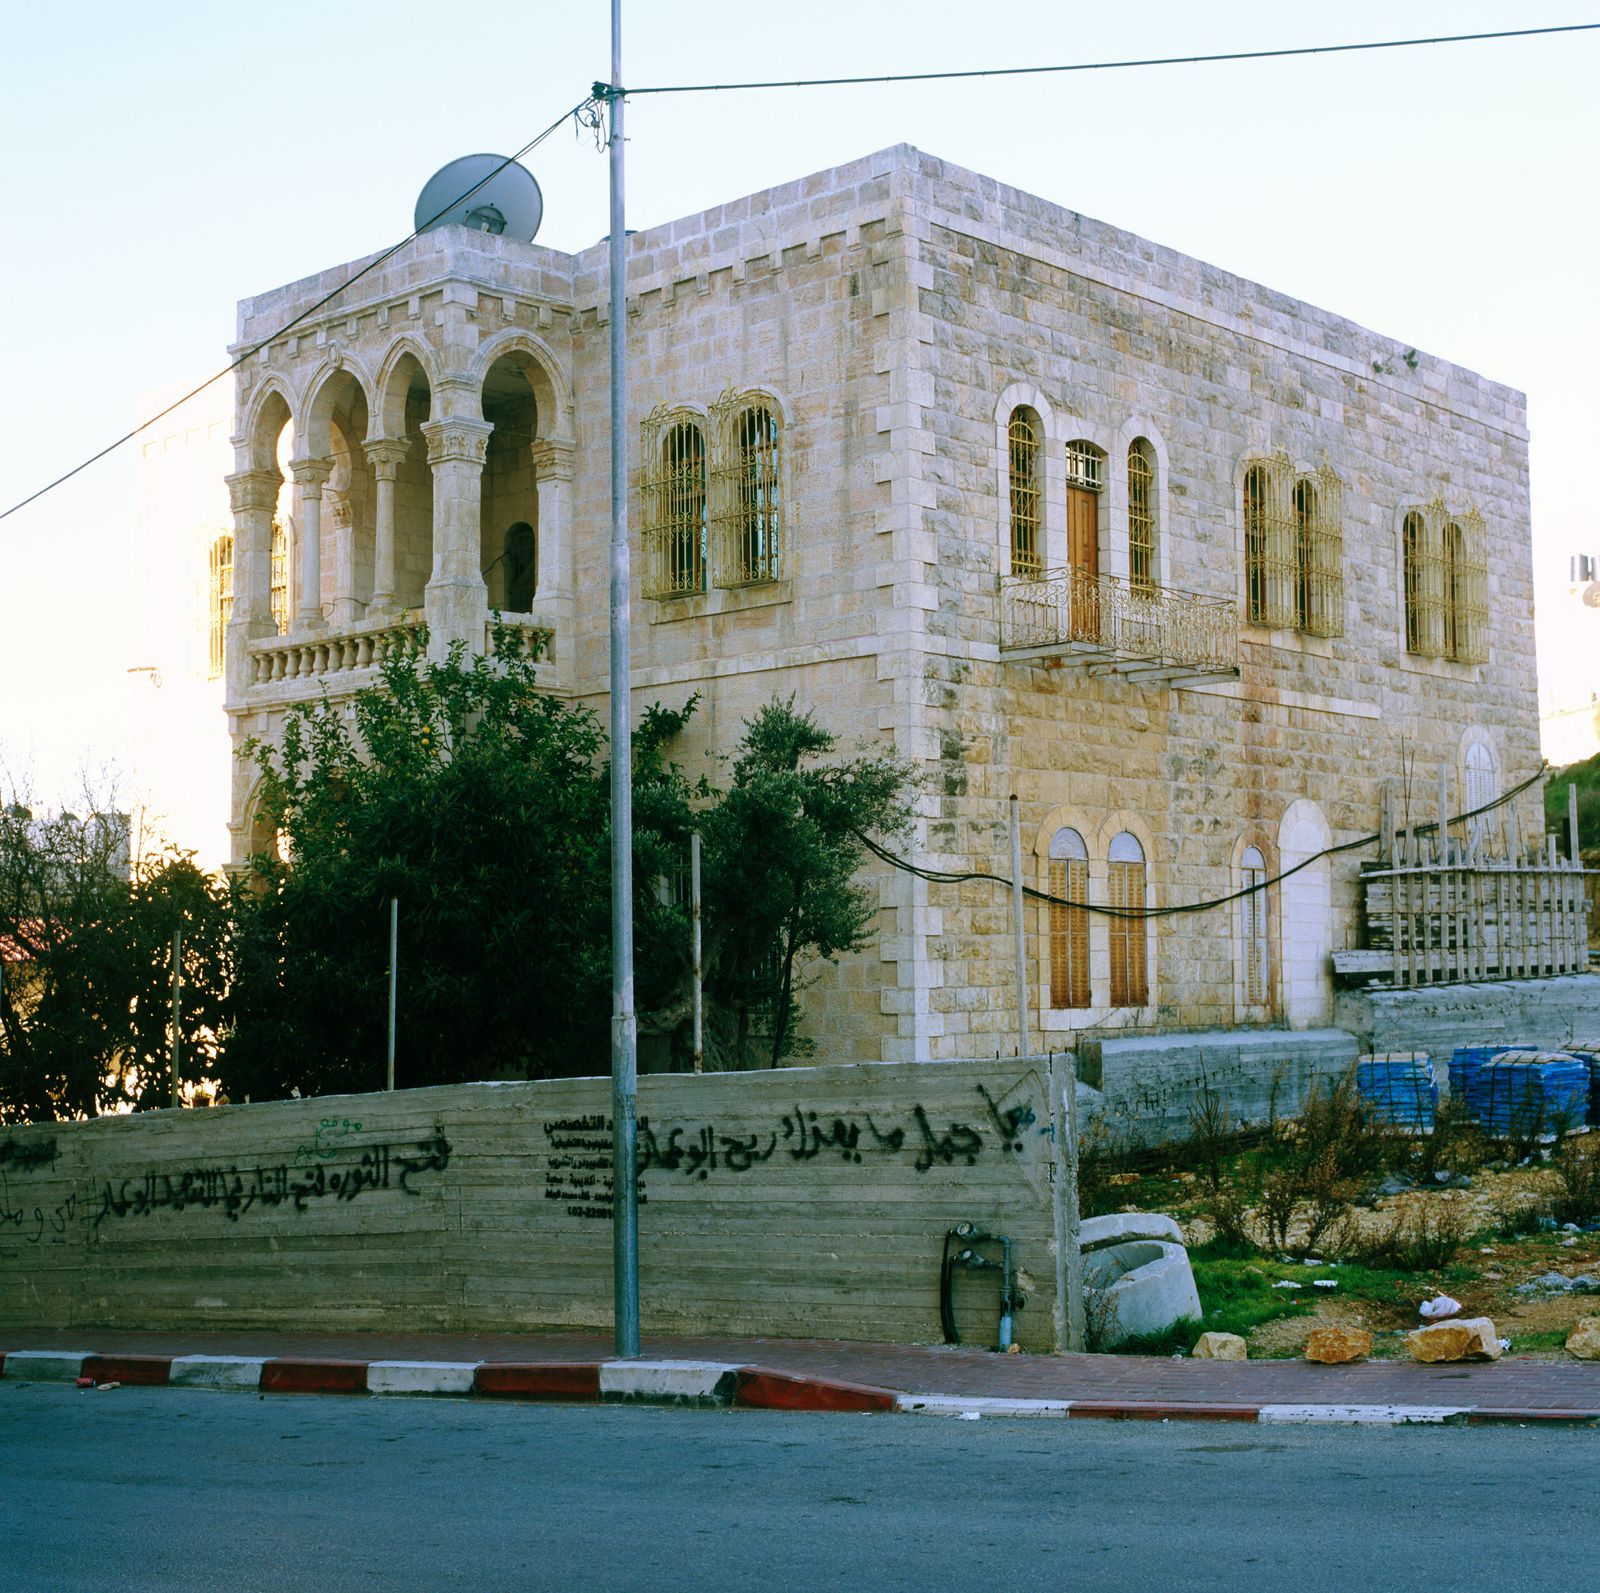 © Federico Busonero - Hebron, historical palace